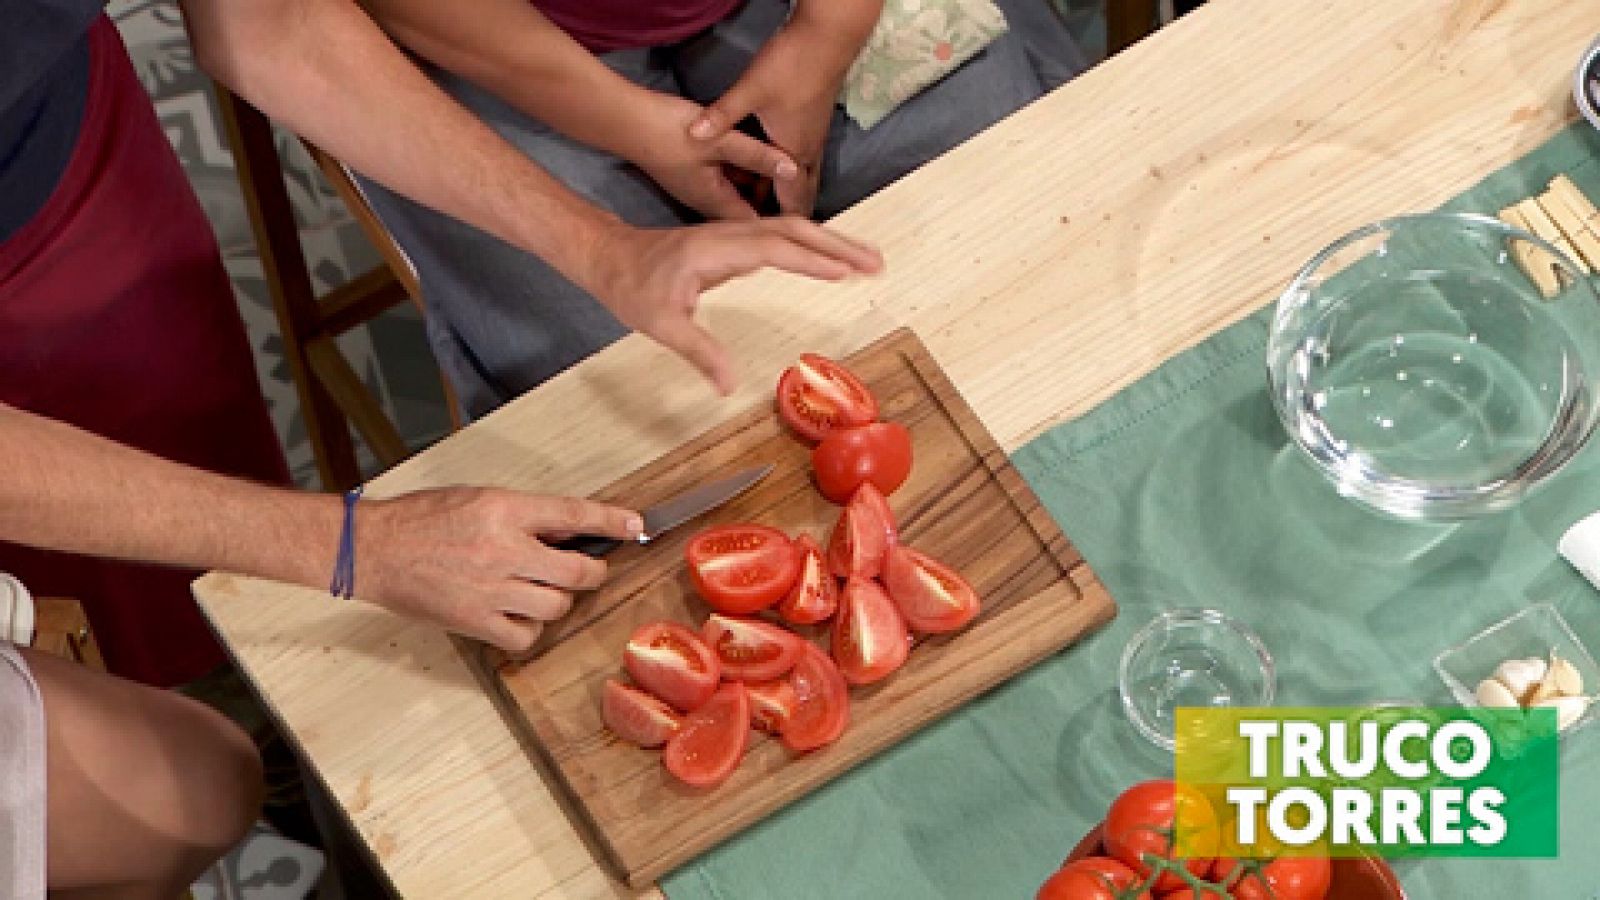 Trucos de cocina - Cómo hacer tomates secos